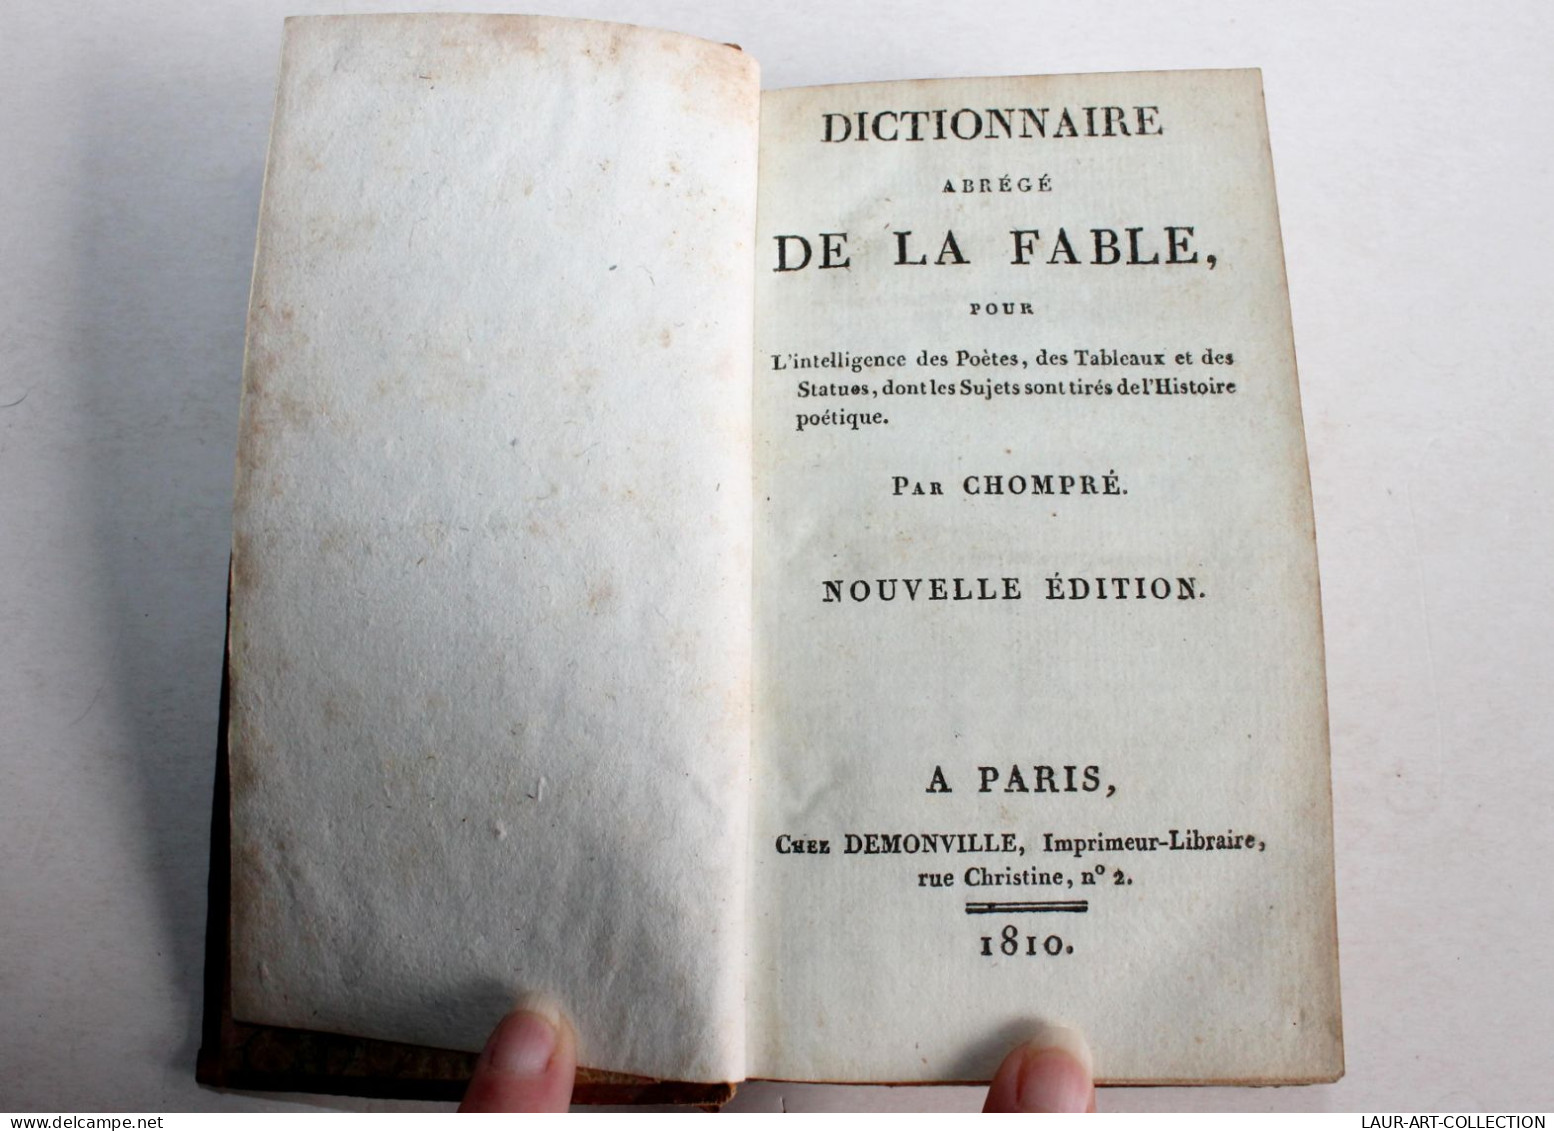 DICTIONNAIRE ABREGE DE LA FABLE Pour DES POETES De CHOMPRE NOUVELLE EDITION 1810 / ANCIEN LIVRE XIXe SIECLE (1803.116) - Französische Autoren